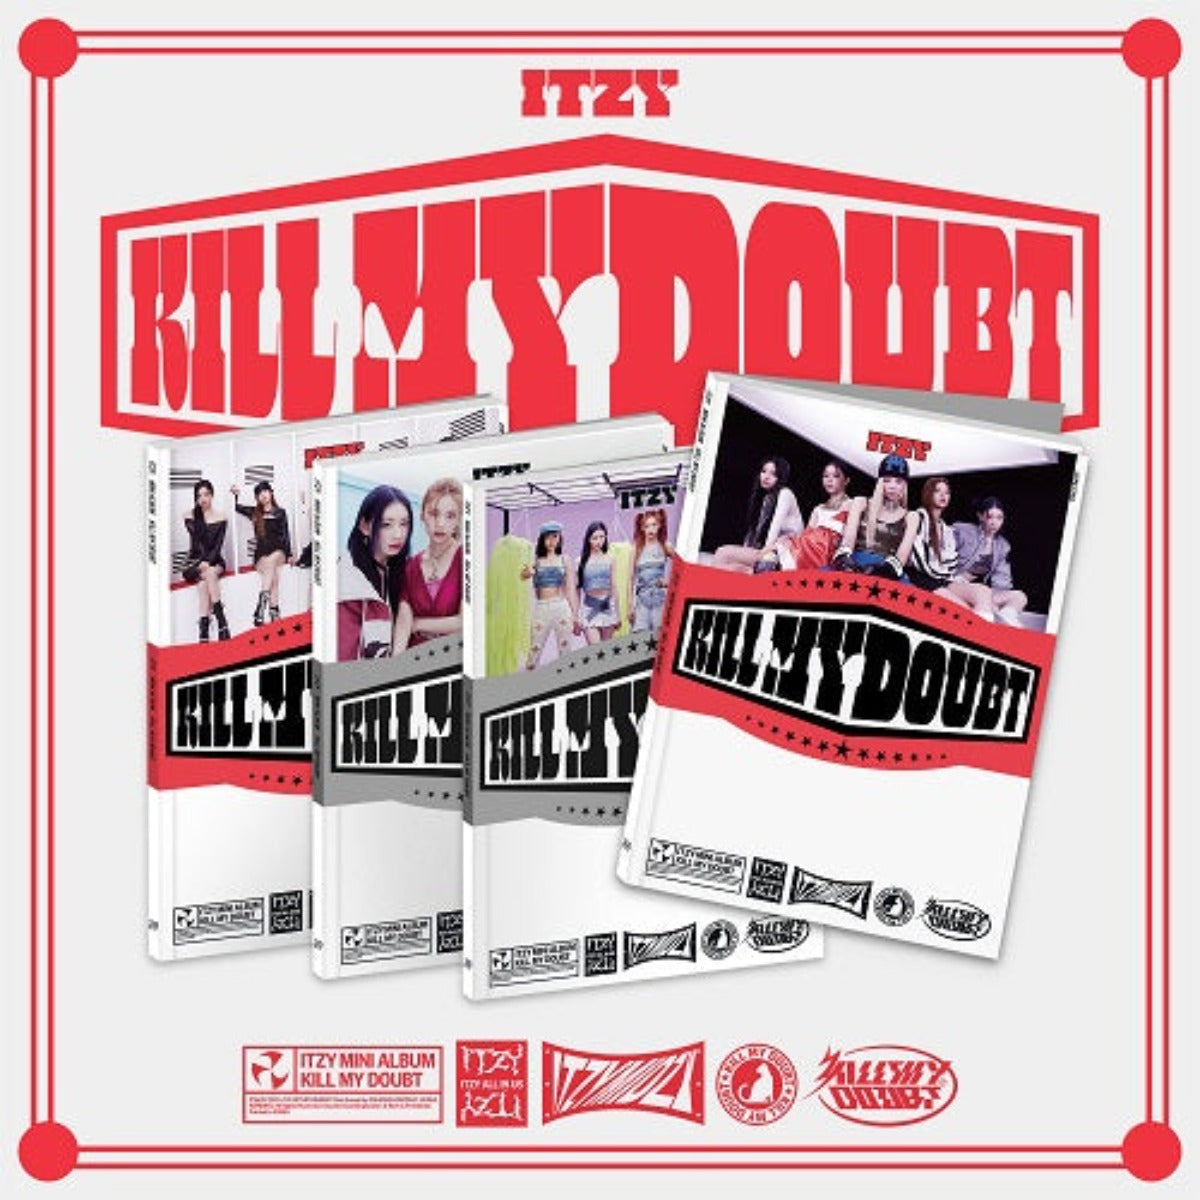 ITZY Mini Album Vol. 7 - KILL MY DOUBT (Standard Version)